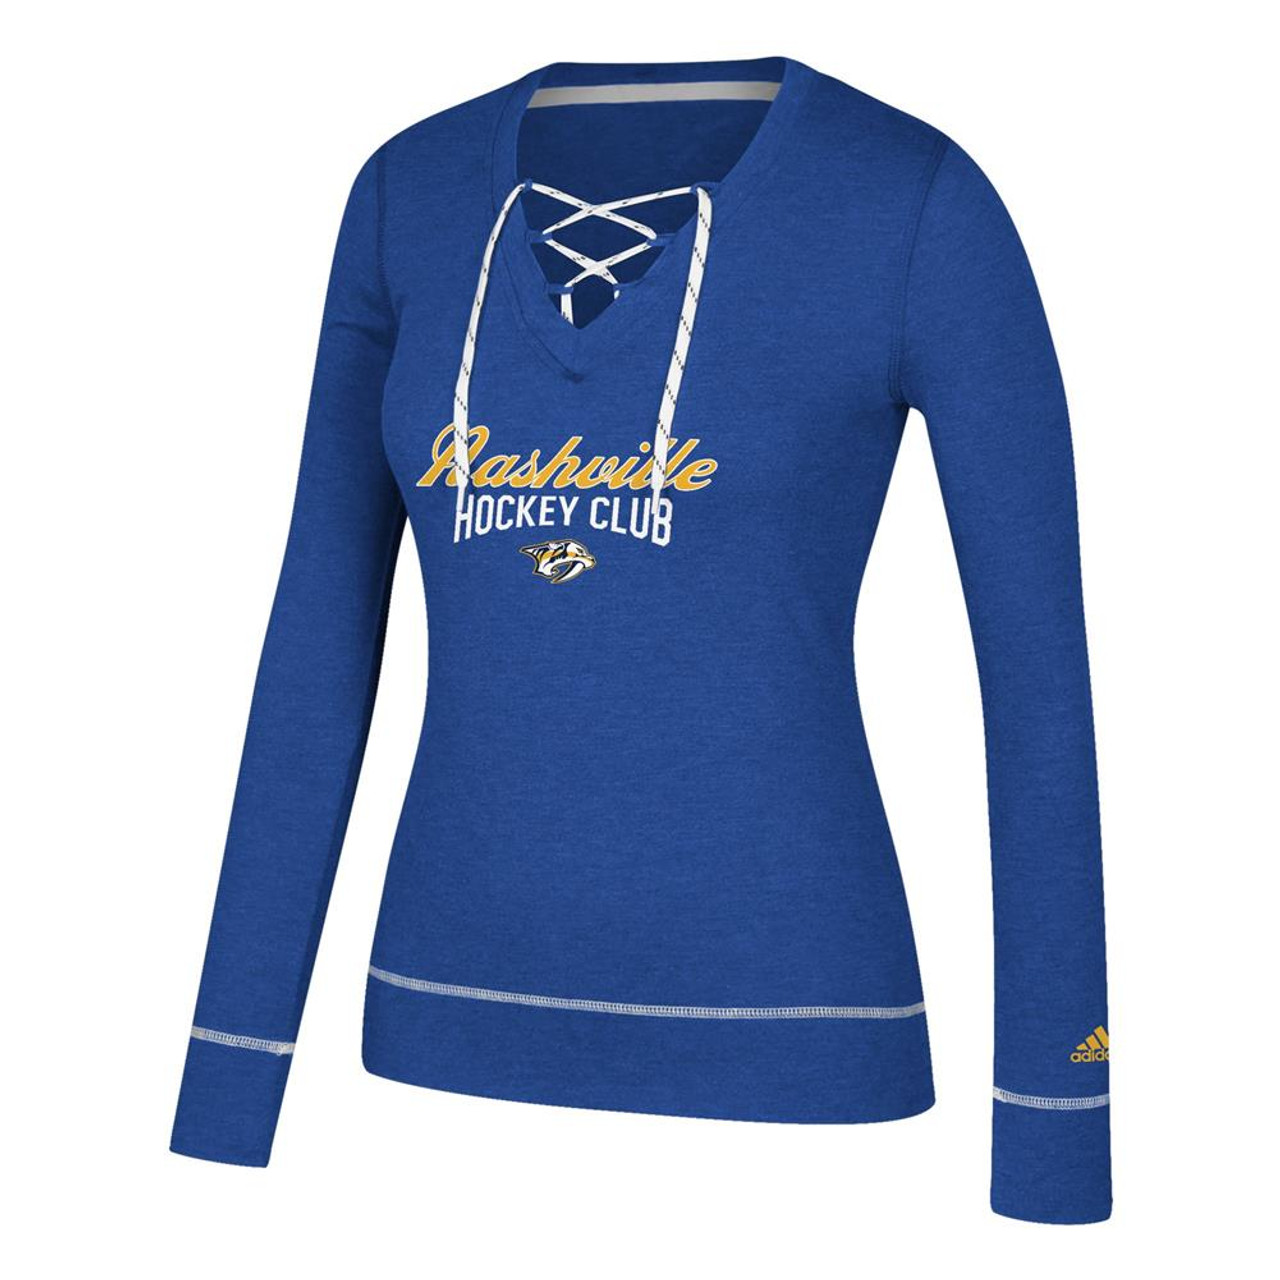 Nashville Predators- St.Louis Blues shirt